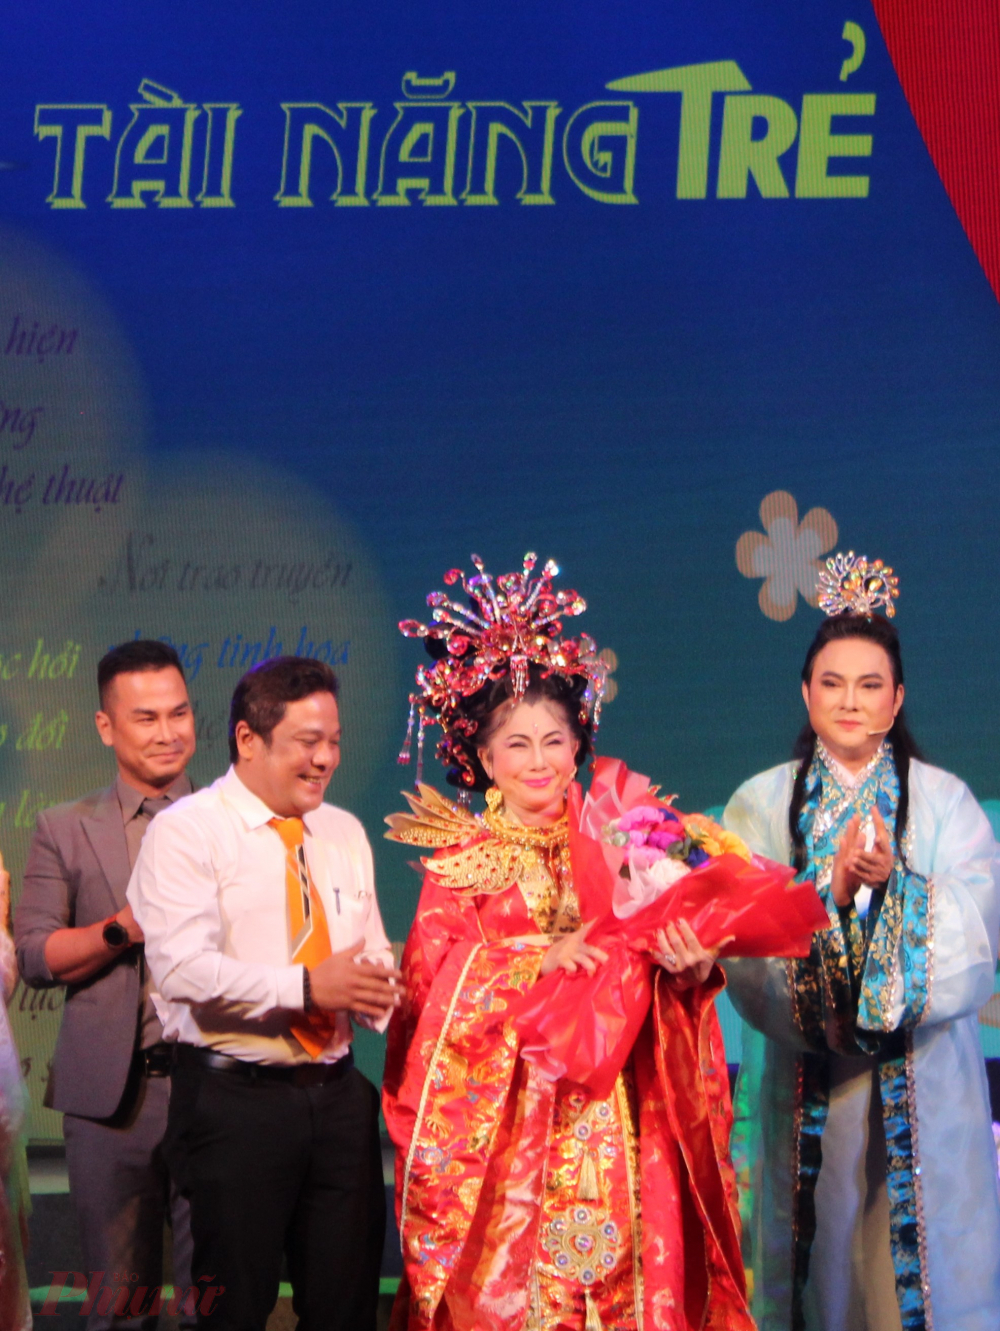 Giám đốc Nhà hát Cải lương Trần Hữu Trang Phan Quốc Kiệt tặng hoa cho NSƯT Vân Hà là ngôi sao khách mời tham gia hỗ trợ các nghệ sĩ trẻ trong vở diễn.